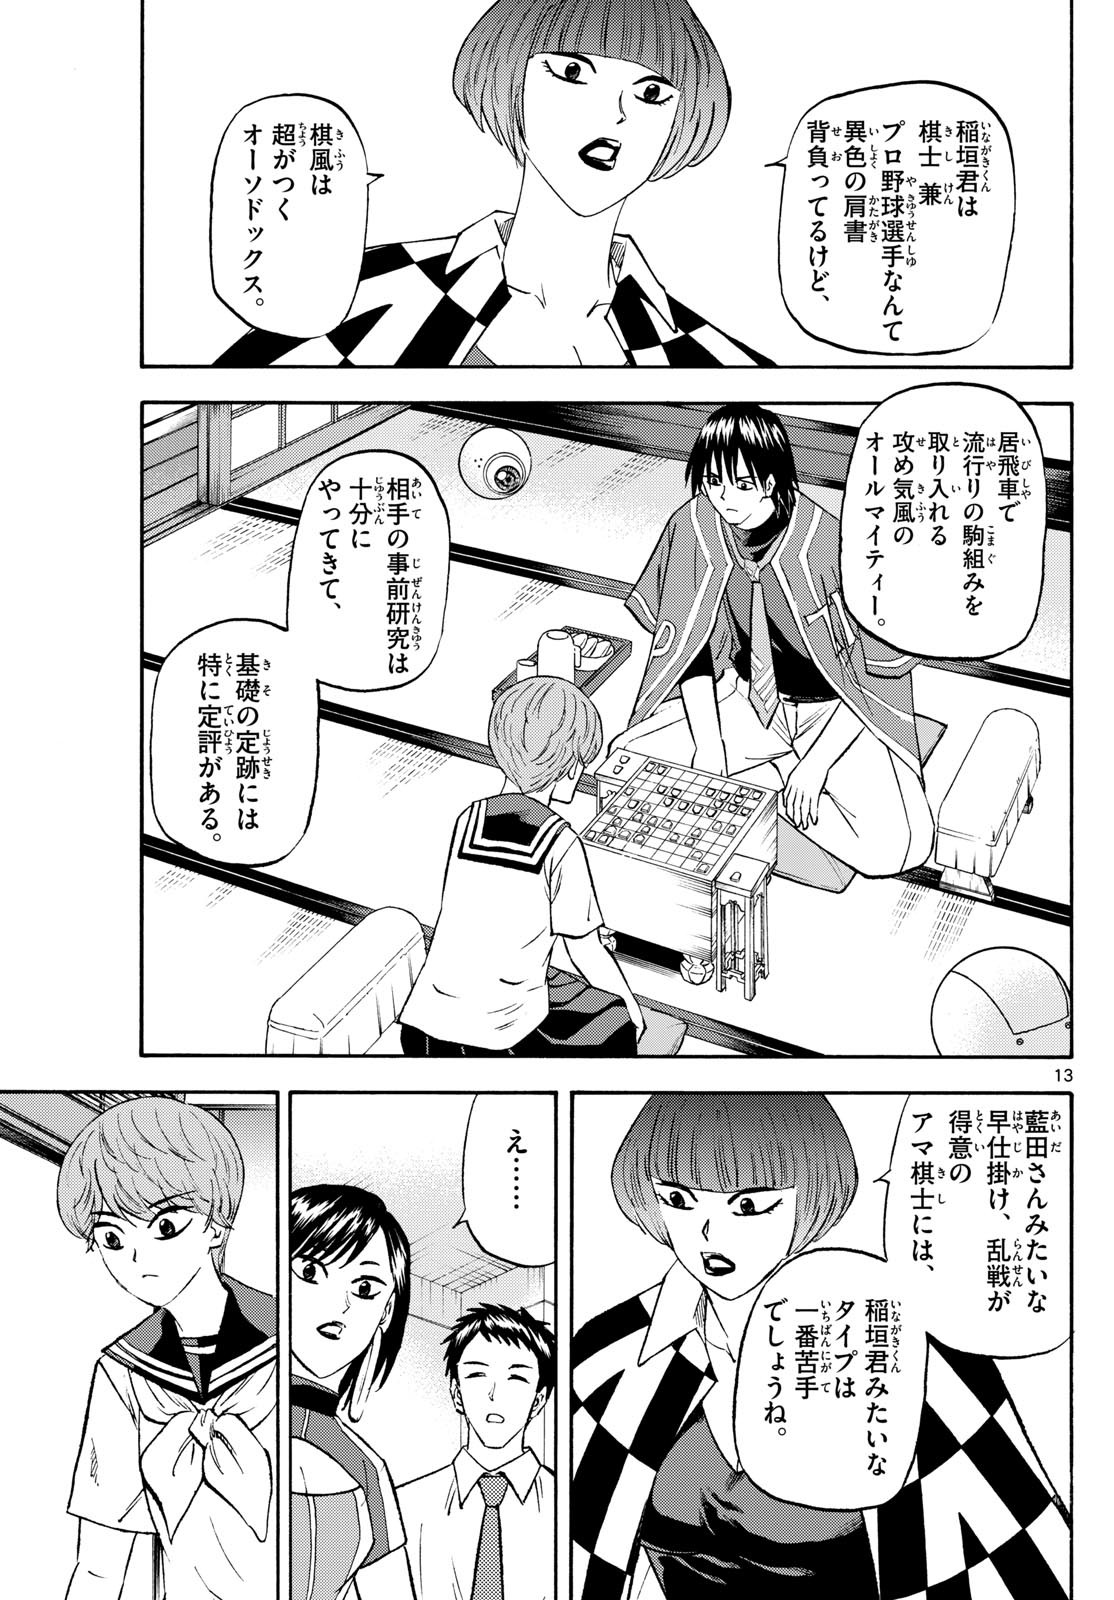 Tatsu to Ichigo - Chapter 197 - Page 13